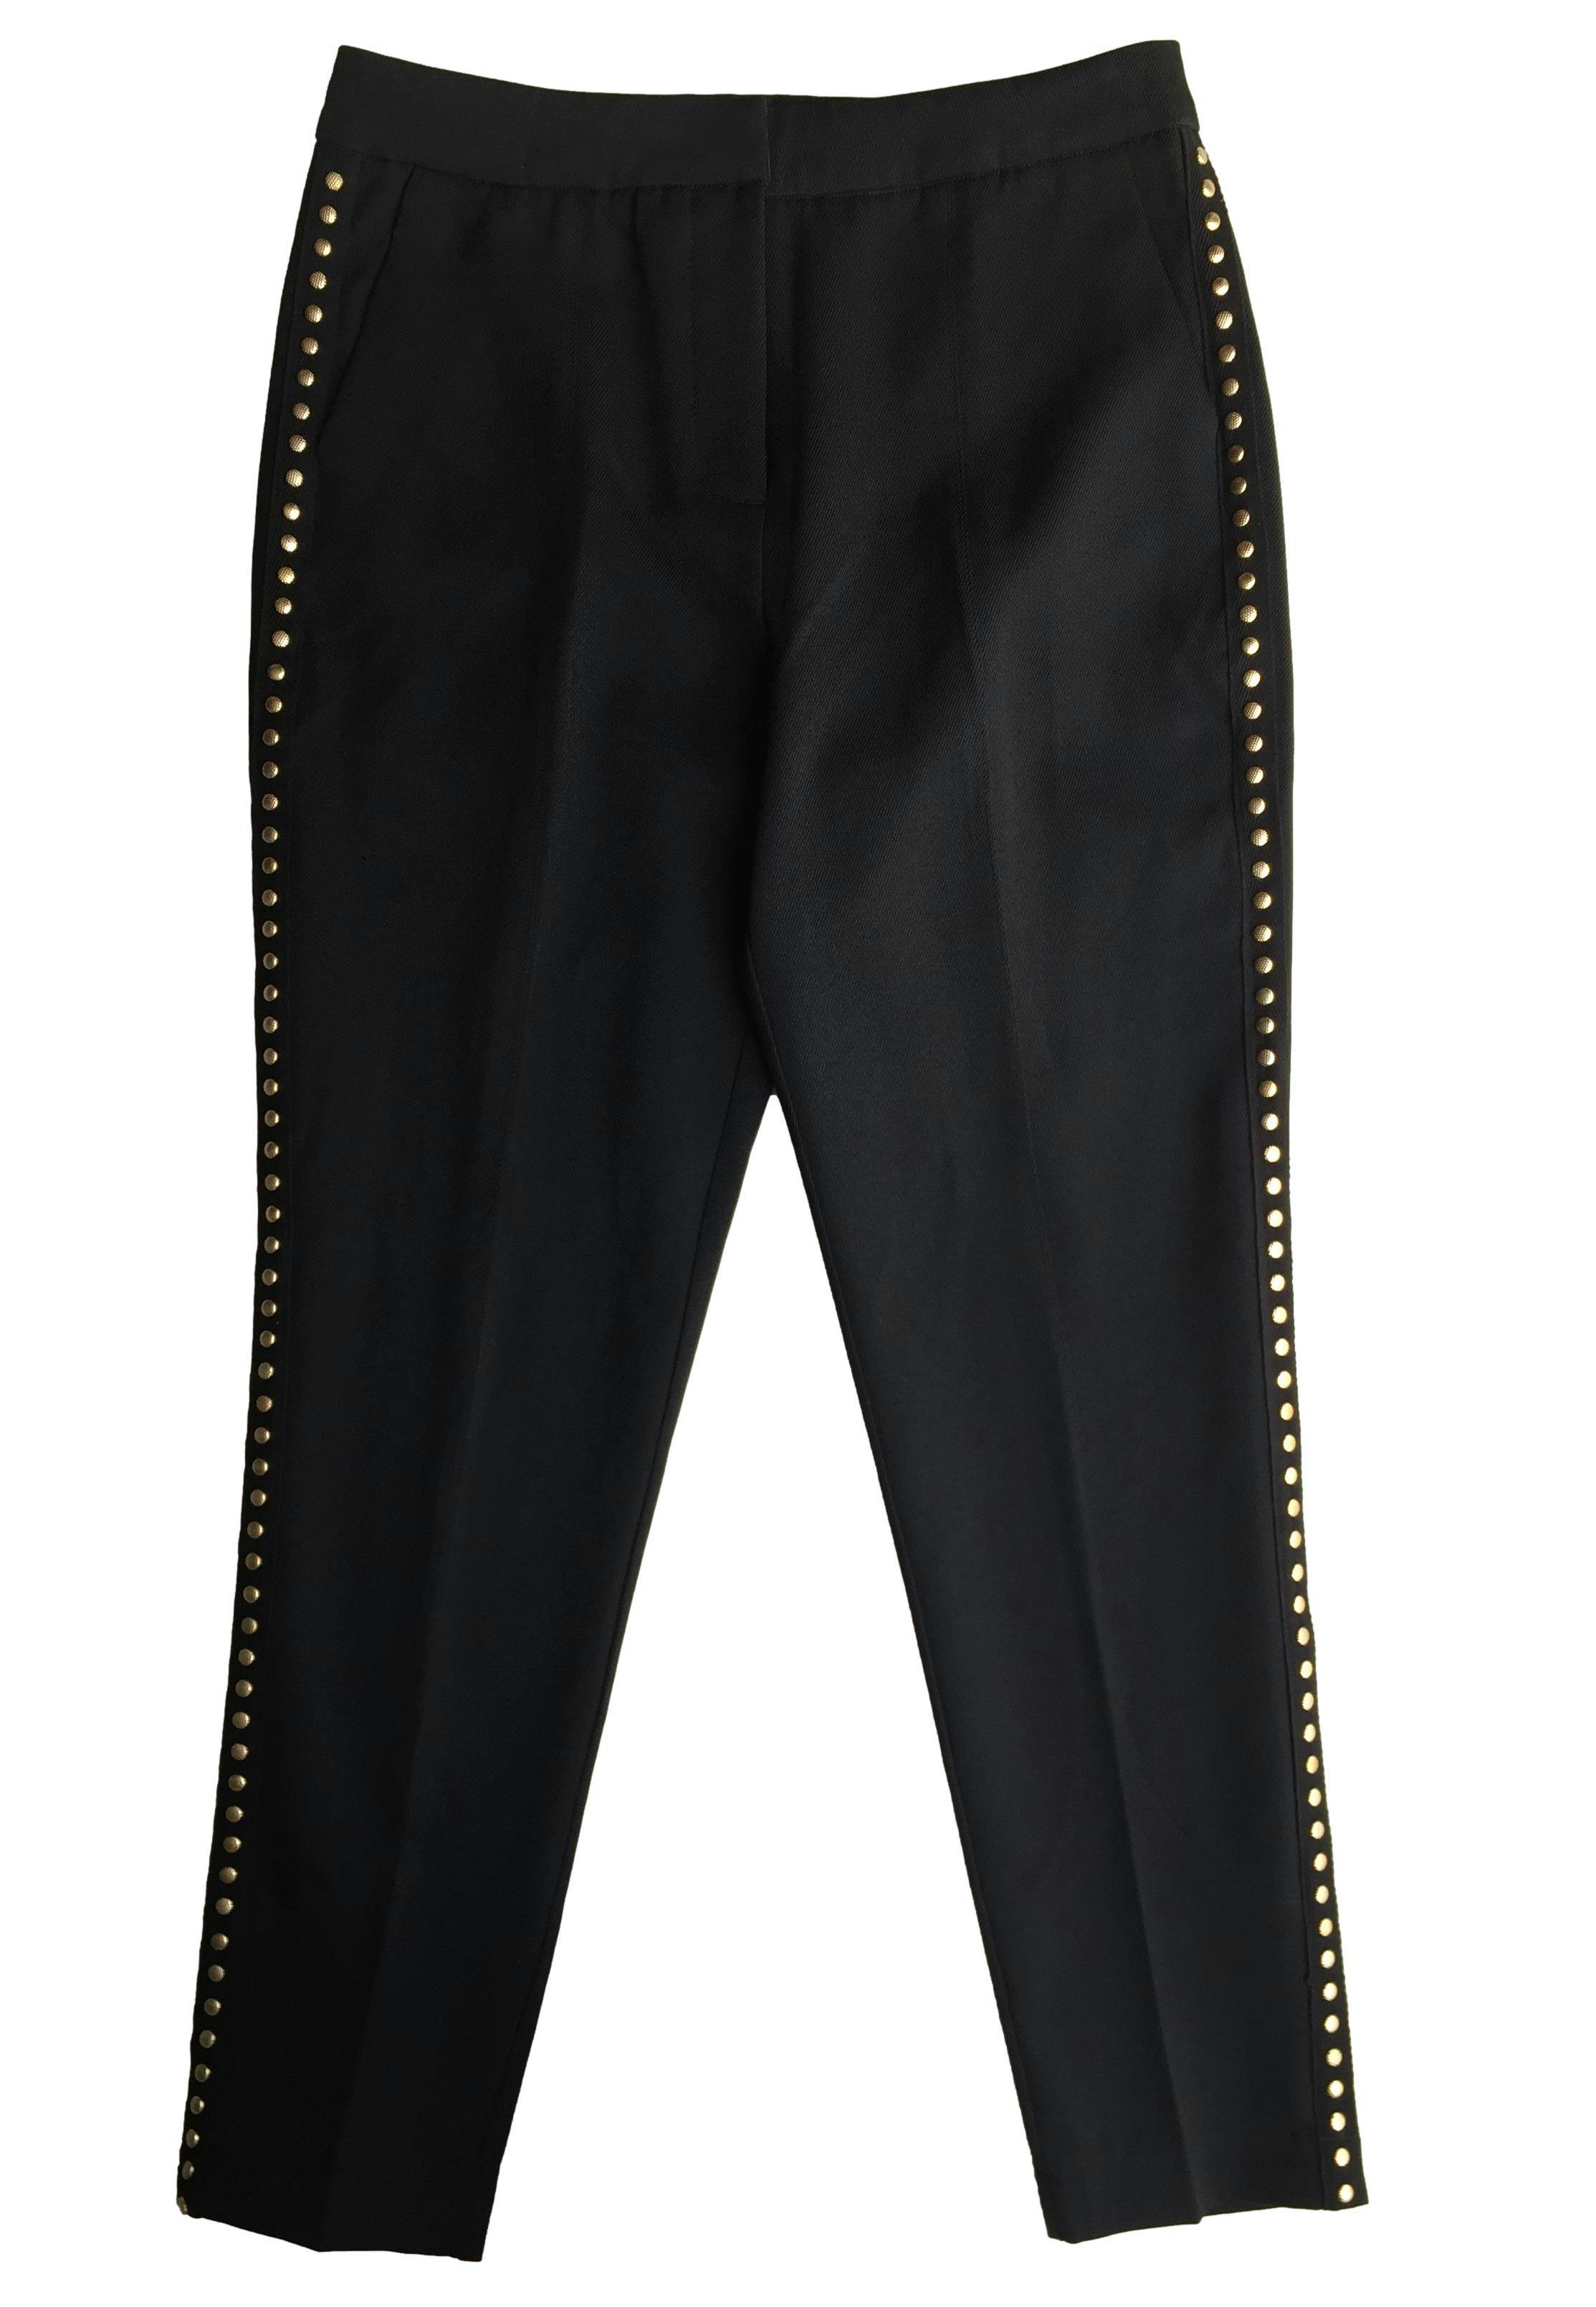 Pantalón Basement negro, aplicaciones doradas en los laterales, bolsillo y cierre delantero. Cintura: 74cm, Tiro: 29cm, Largo: 96cm